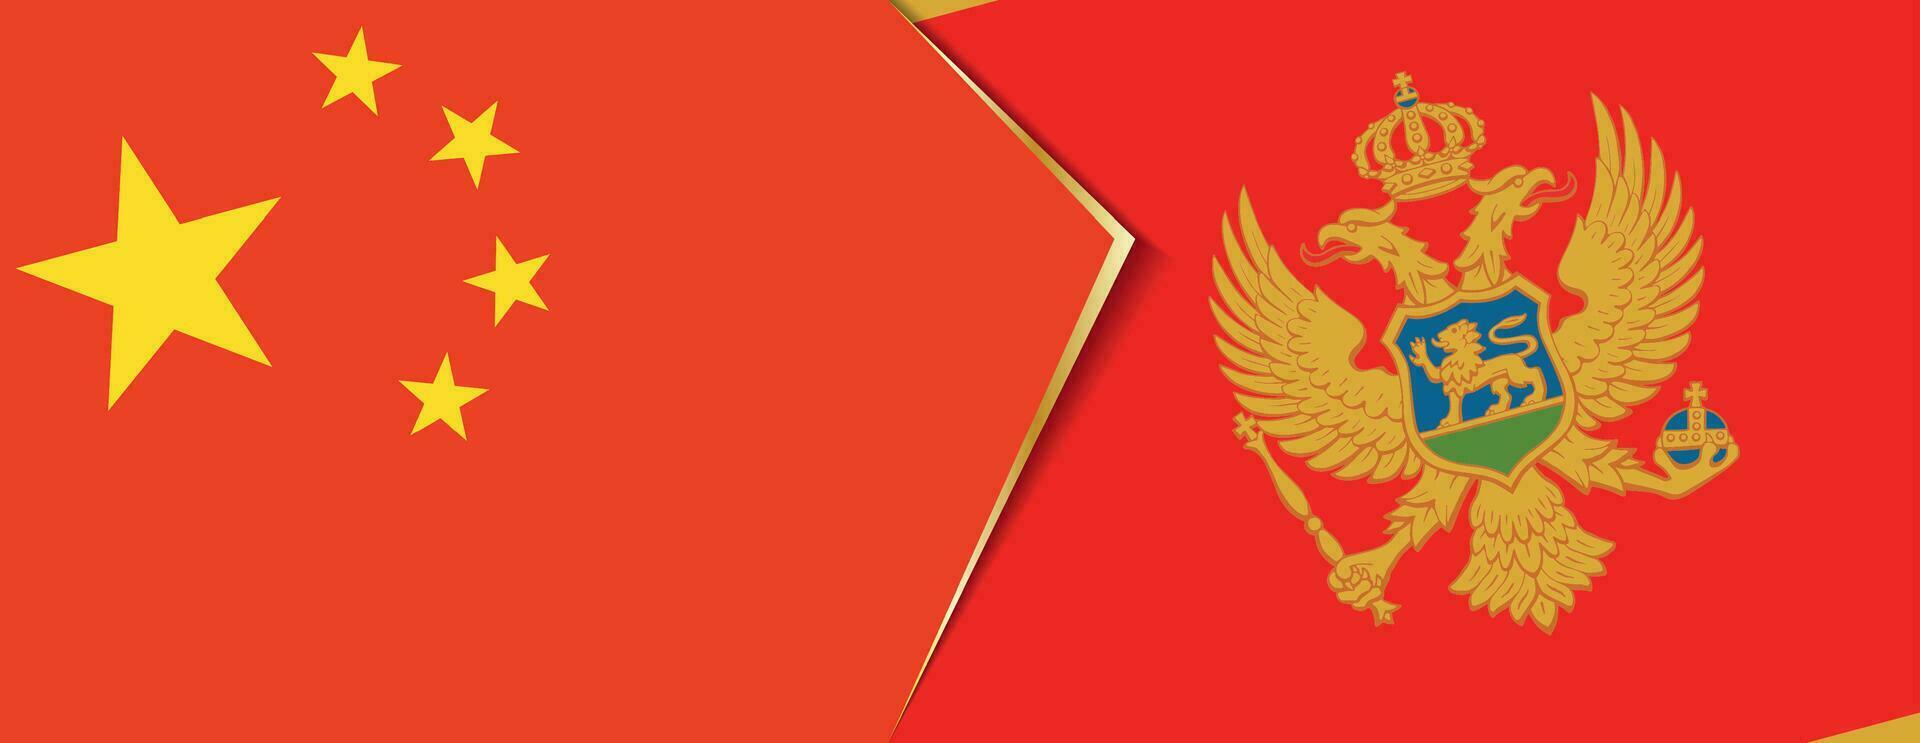 Cina e montenegro bandiere, Due vettore bandiere.